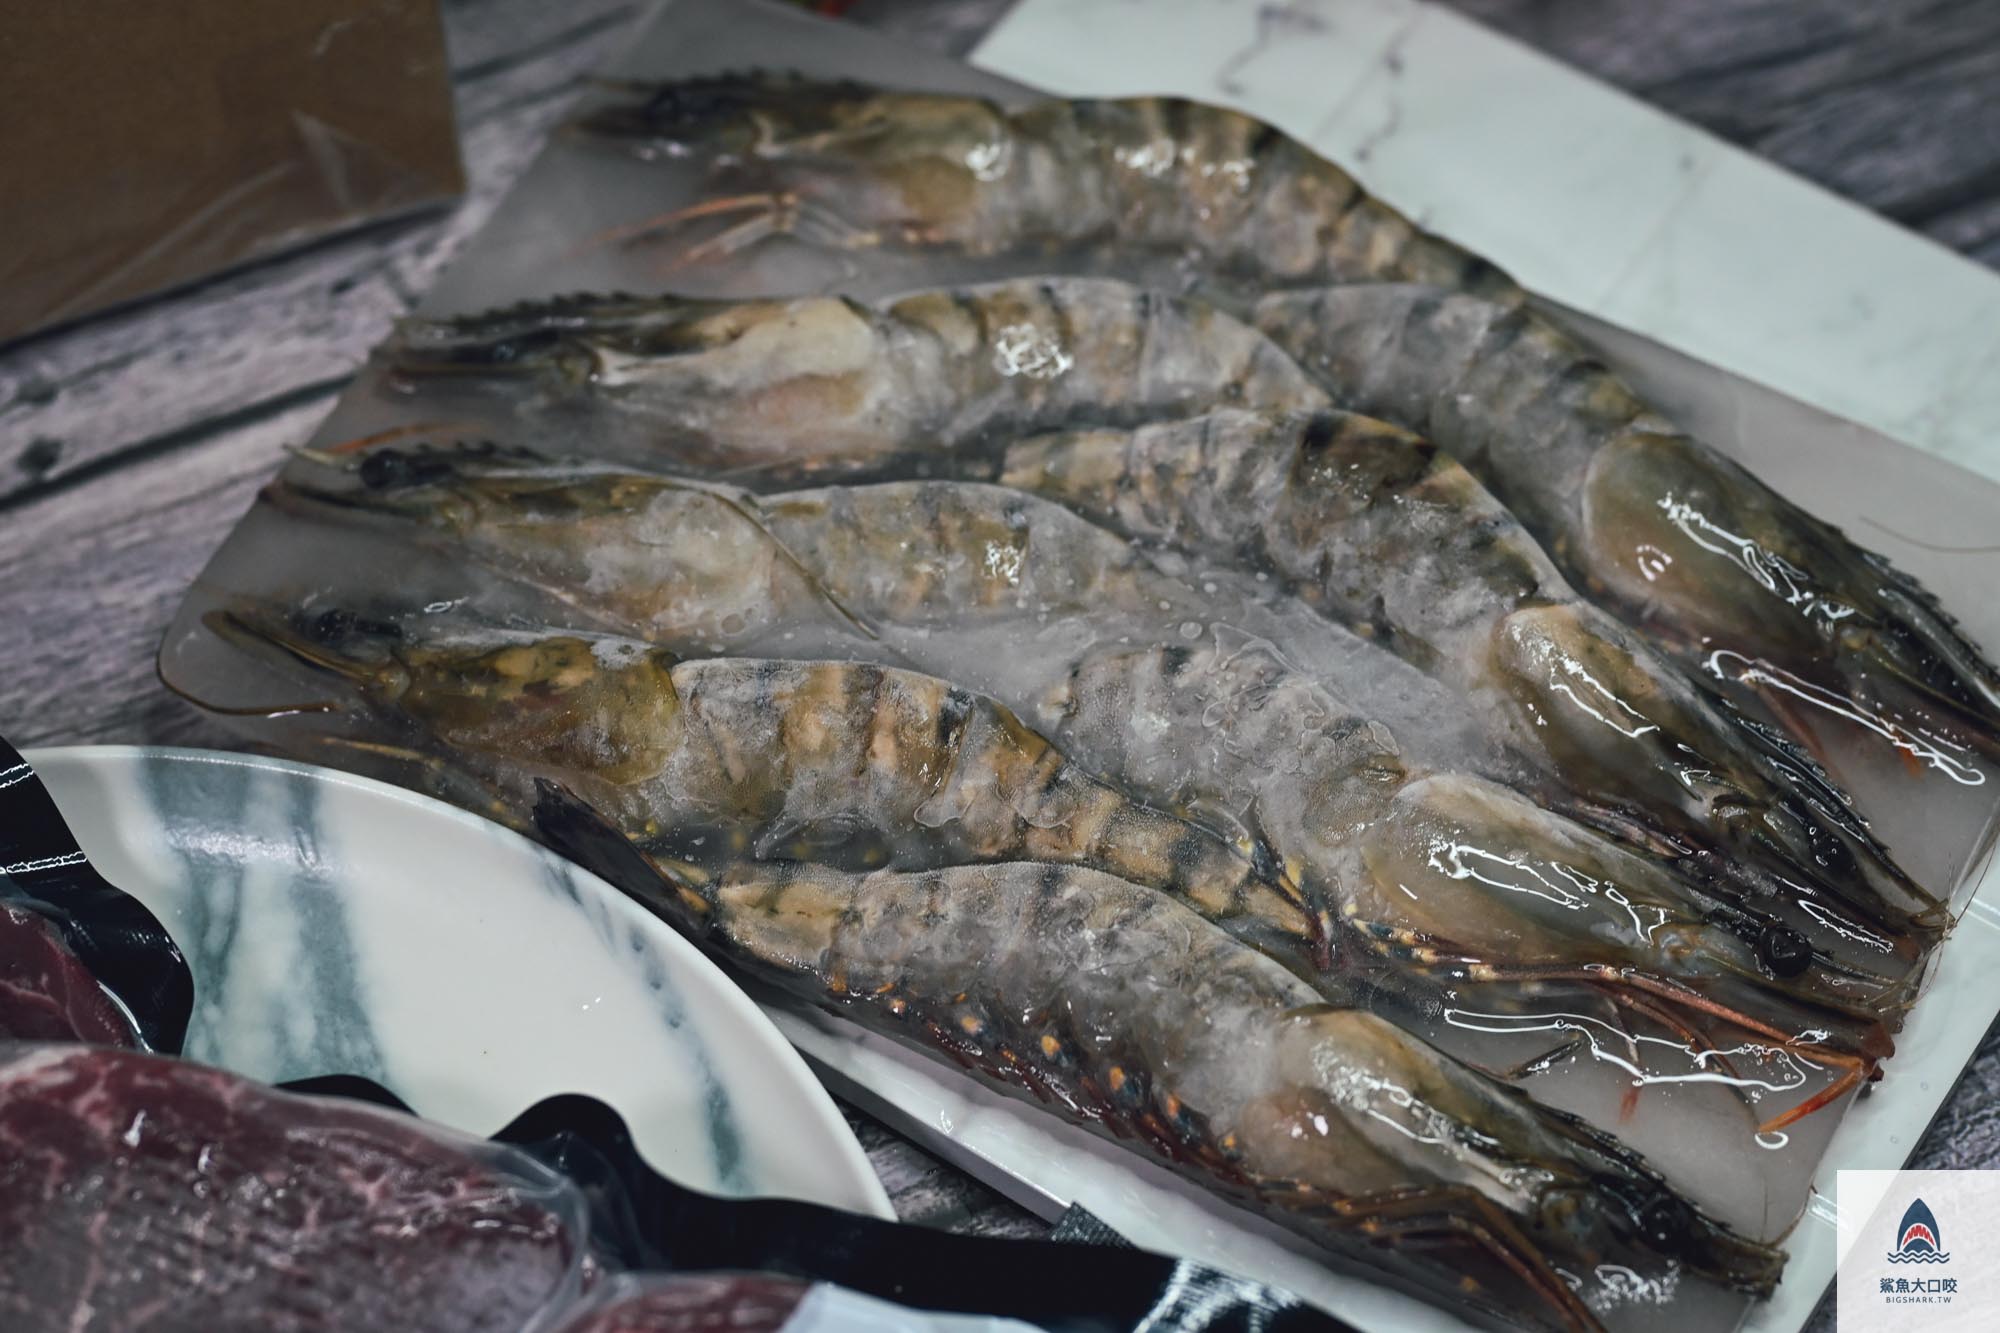 利塔漁市,中部唯一北歐風格生鮮超市,北歐生鮮專賣 @鯊魚大口咬